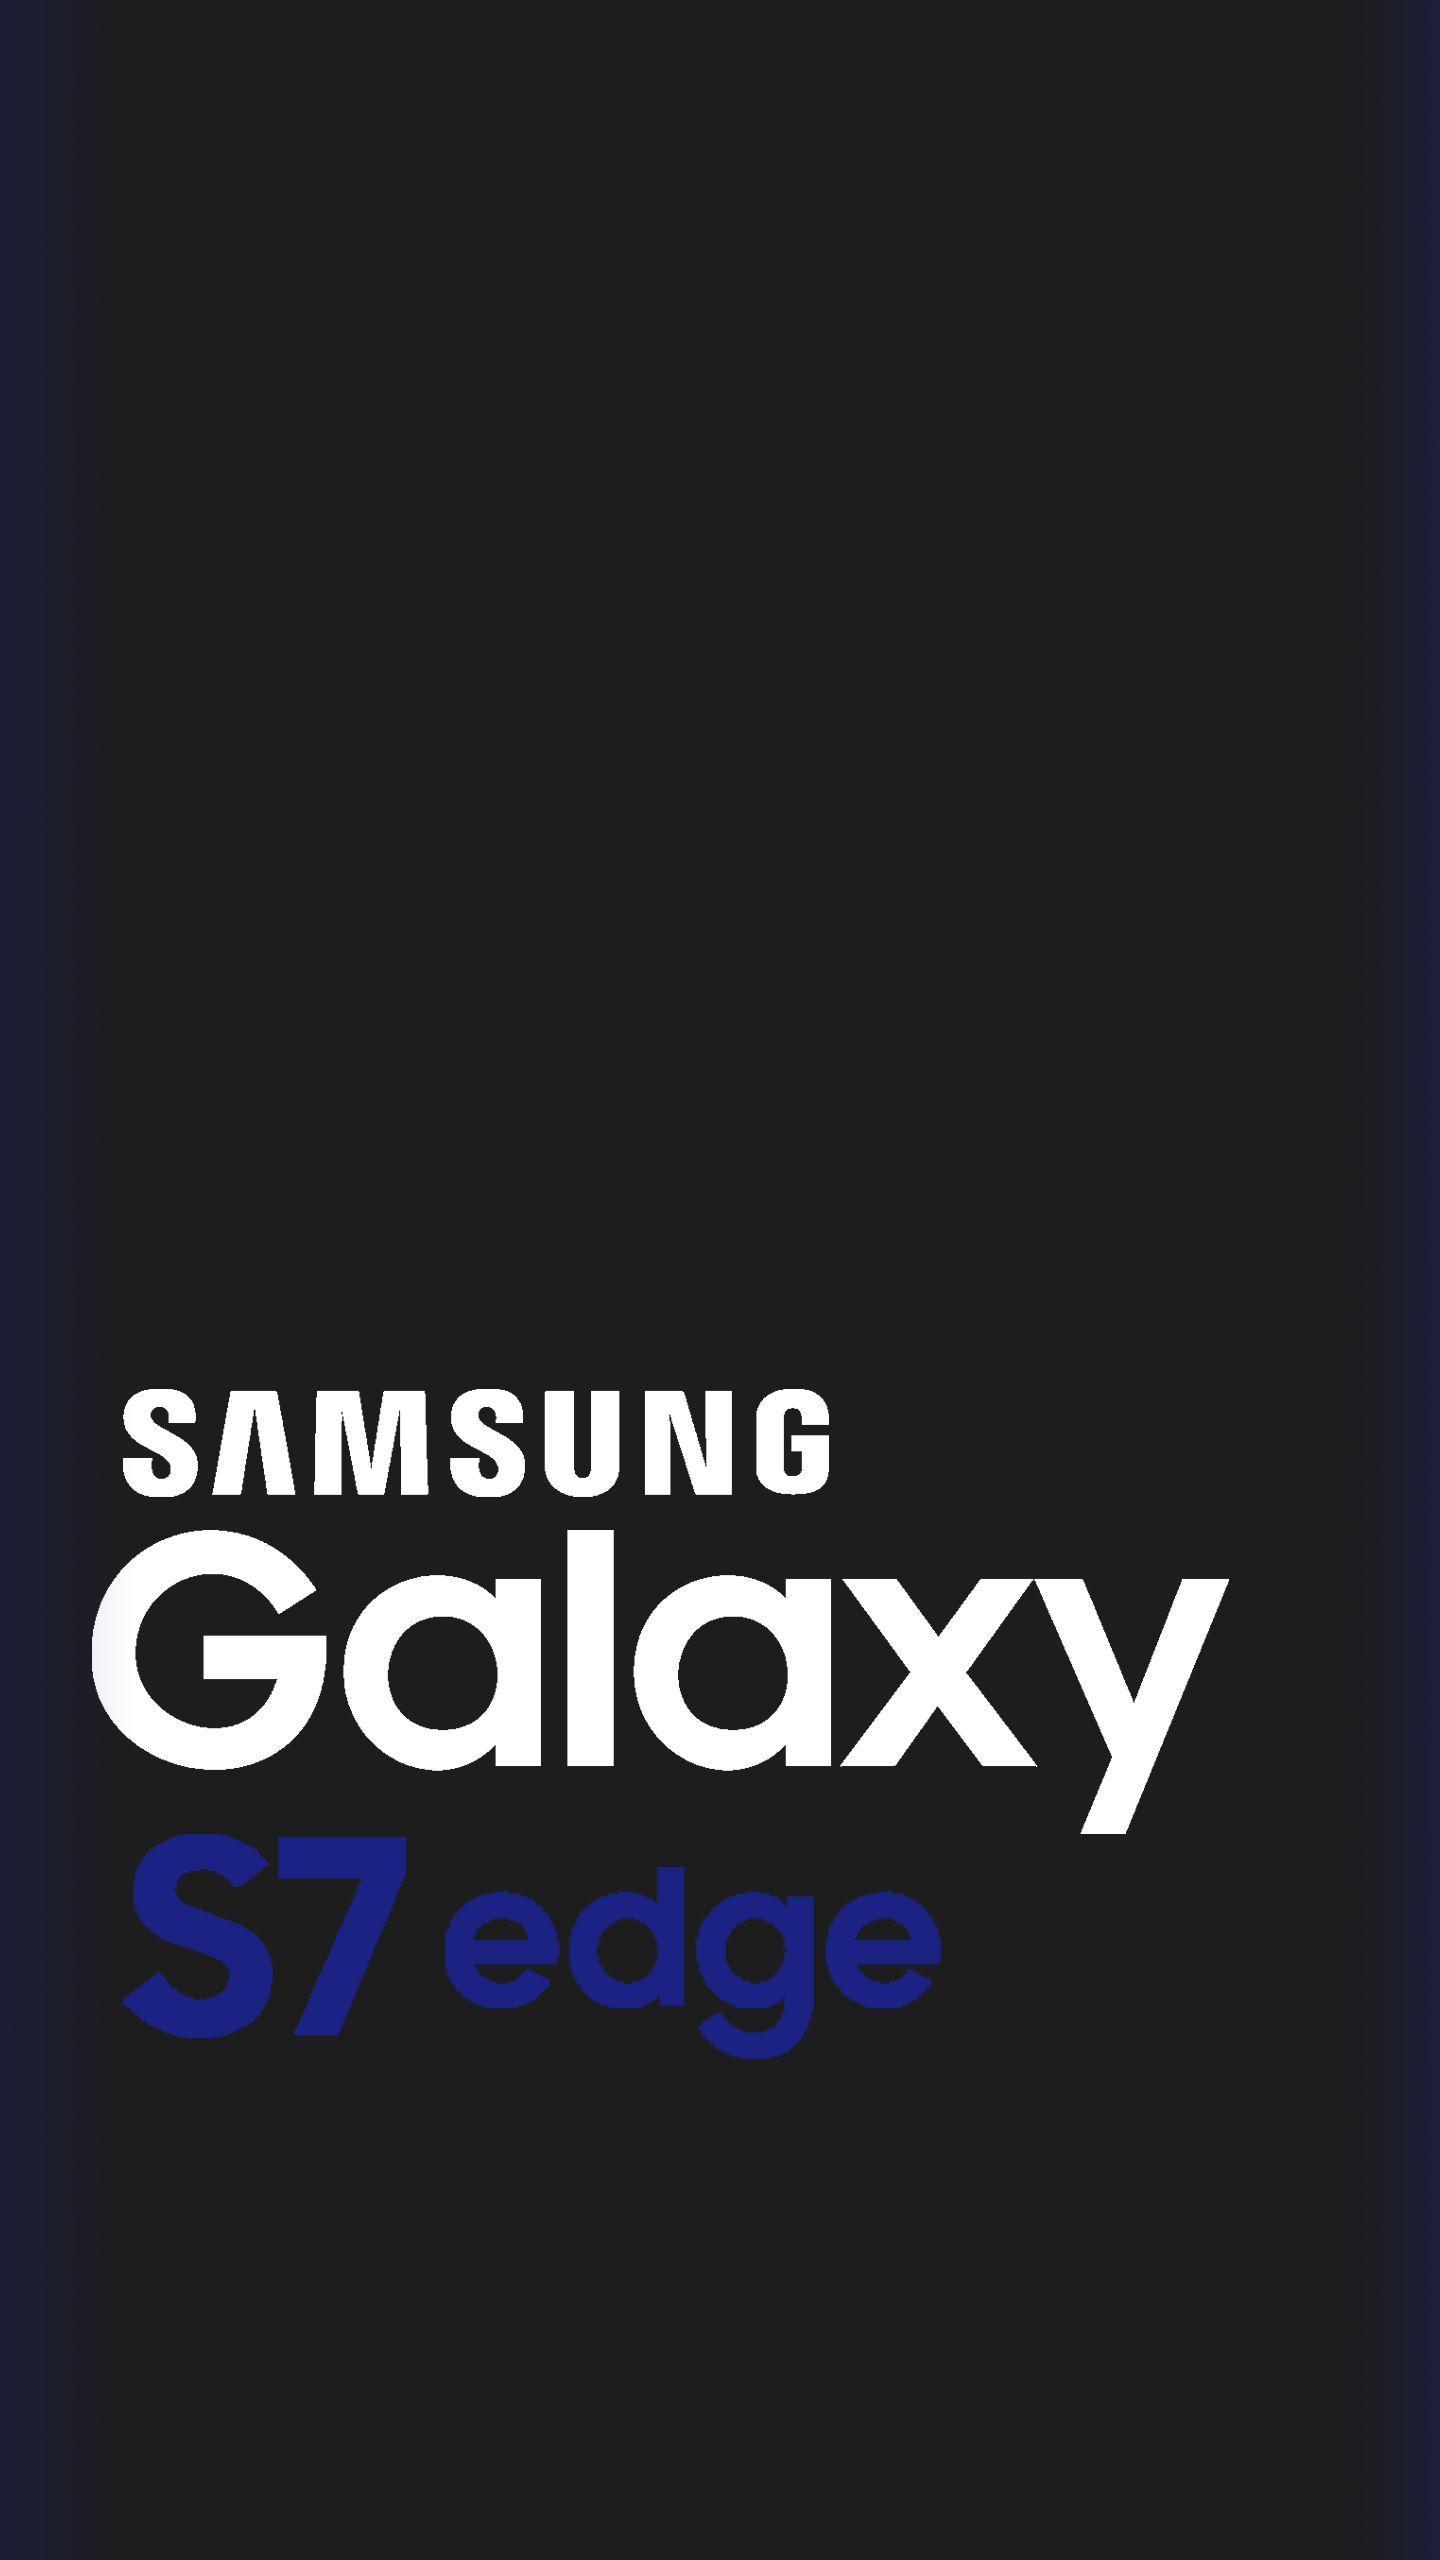 Samsung Galaxy S7 Edge Logo - Samsung Galaxy S7 Edge Wallpaper 9:16 QHD. Graphic Design